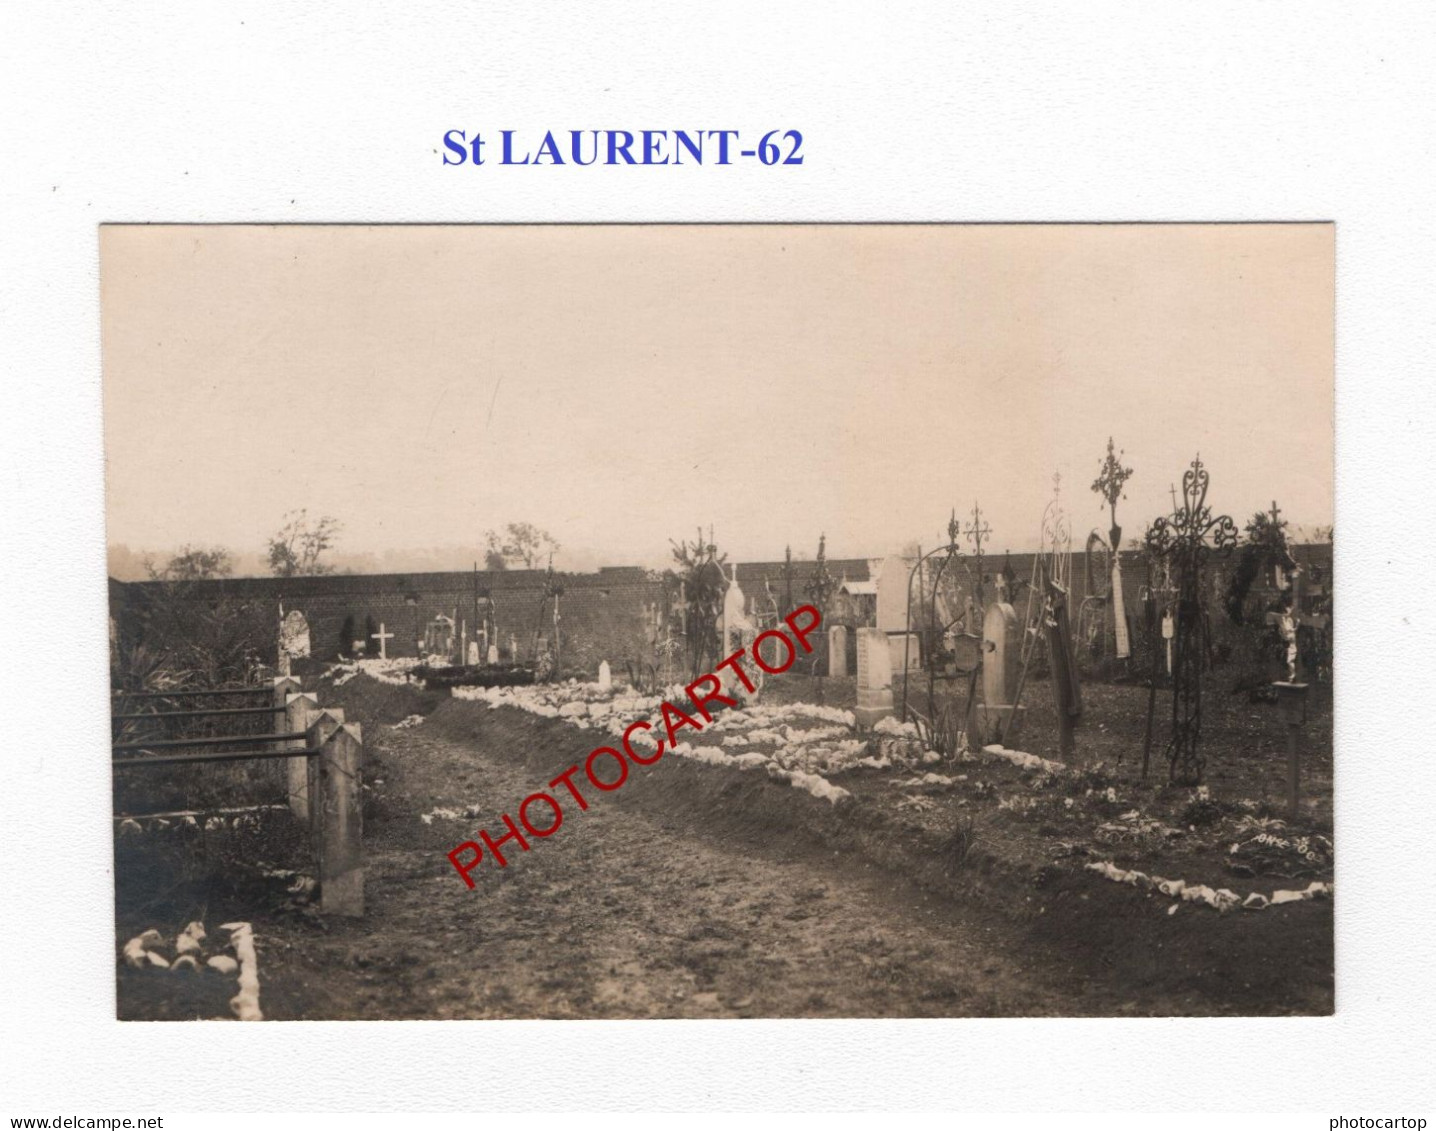 St LAURENT-62-Cimetiere-Tombes-CARTE PHOTO Allemande-GUERRE 14-18-1 WK-MILITARIA- - Oorlogsbegraafplaatsen